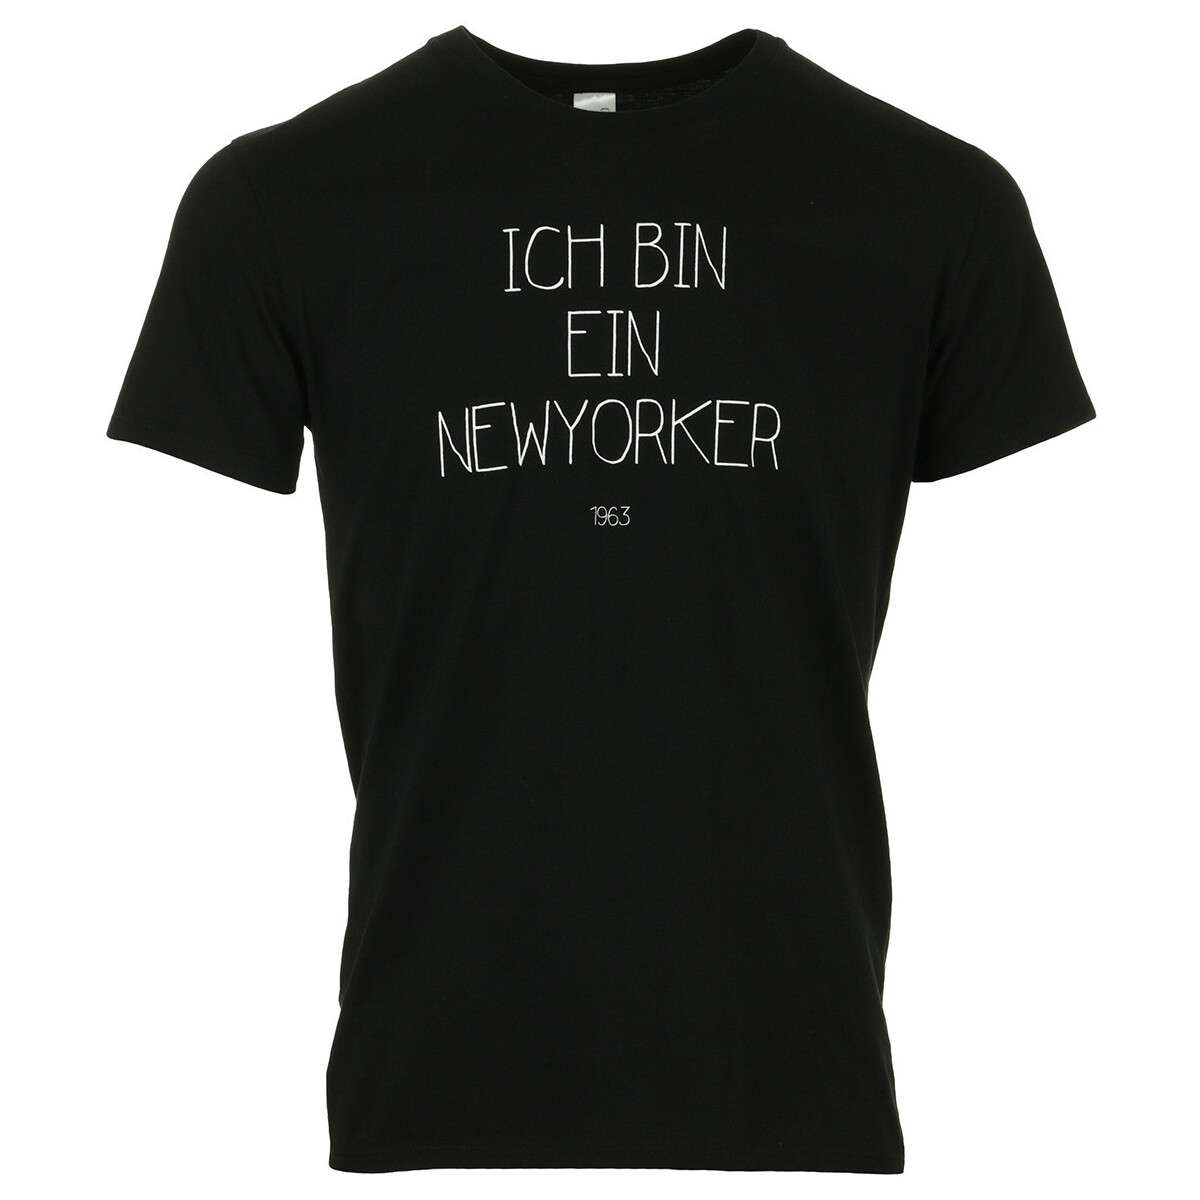 Textil Muži Trička s krátkým rukávem Civissum Ich Bin Ein Newyorker Tee Černá